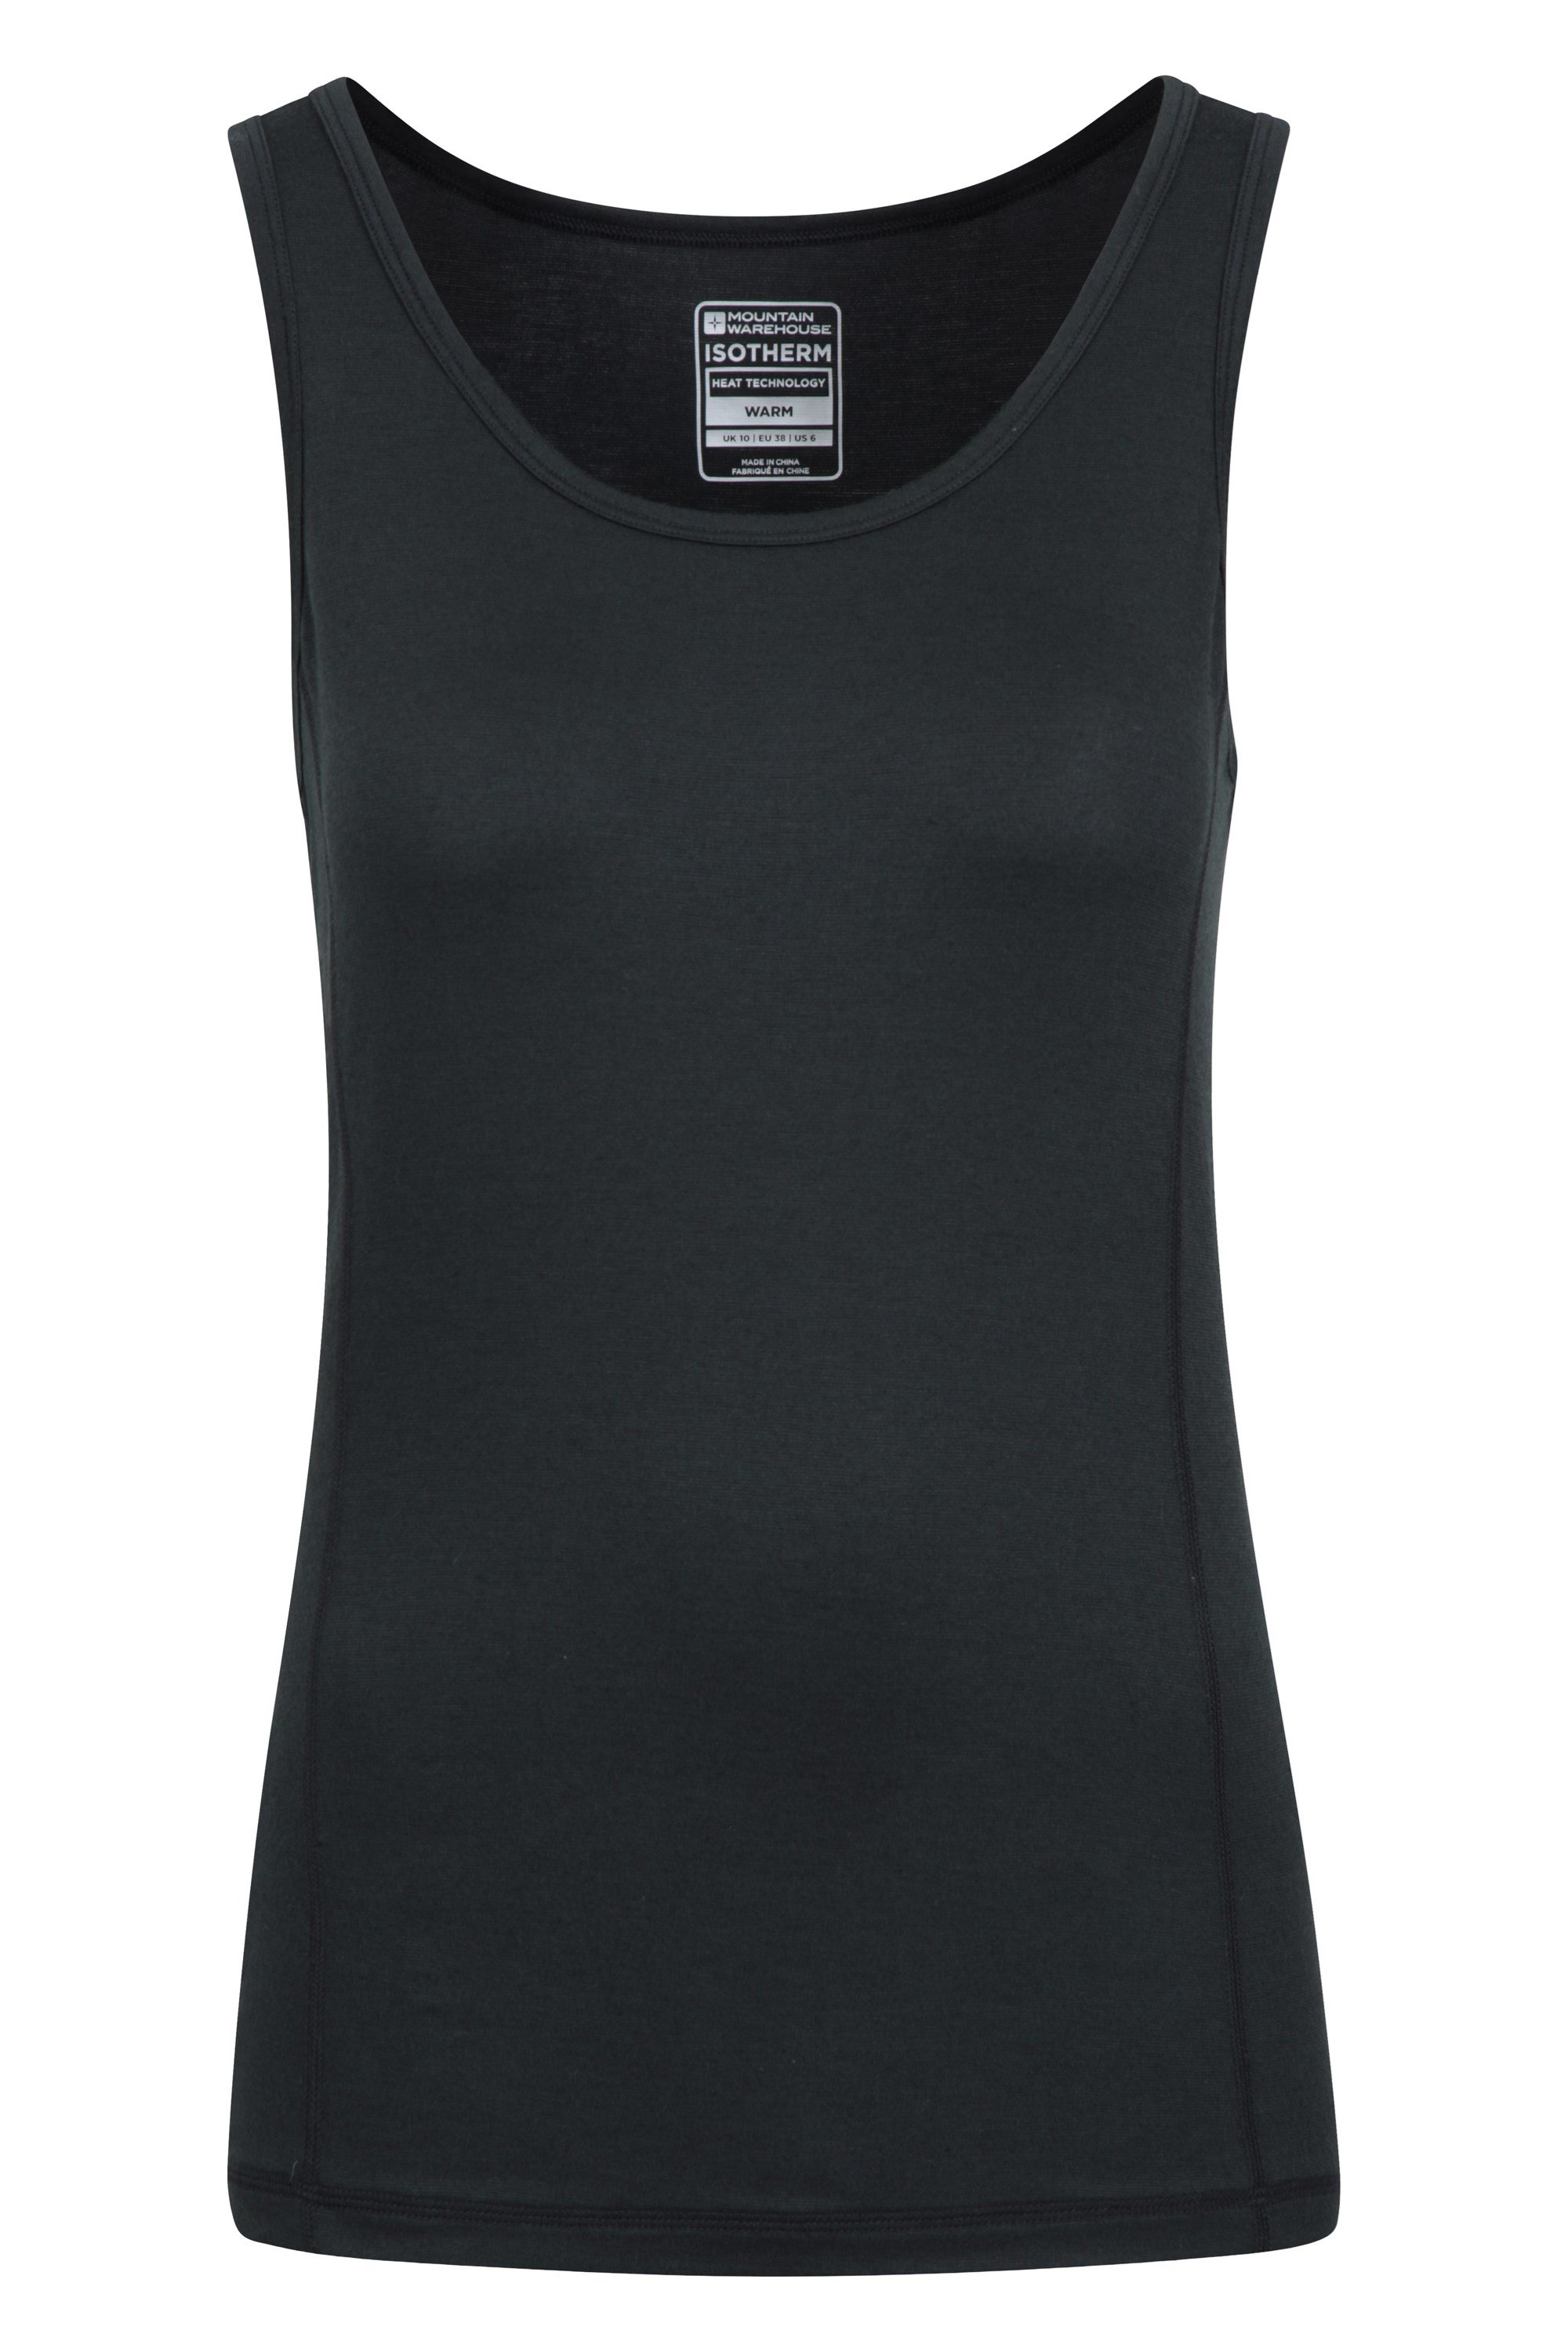 Keep The Heat Ii Womens Thermal Vest Top - Black